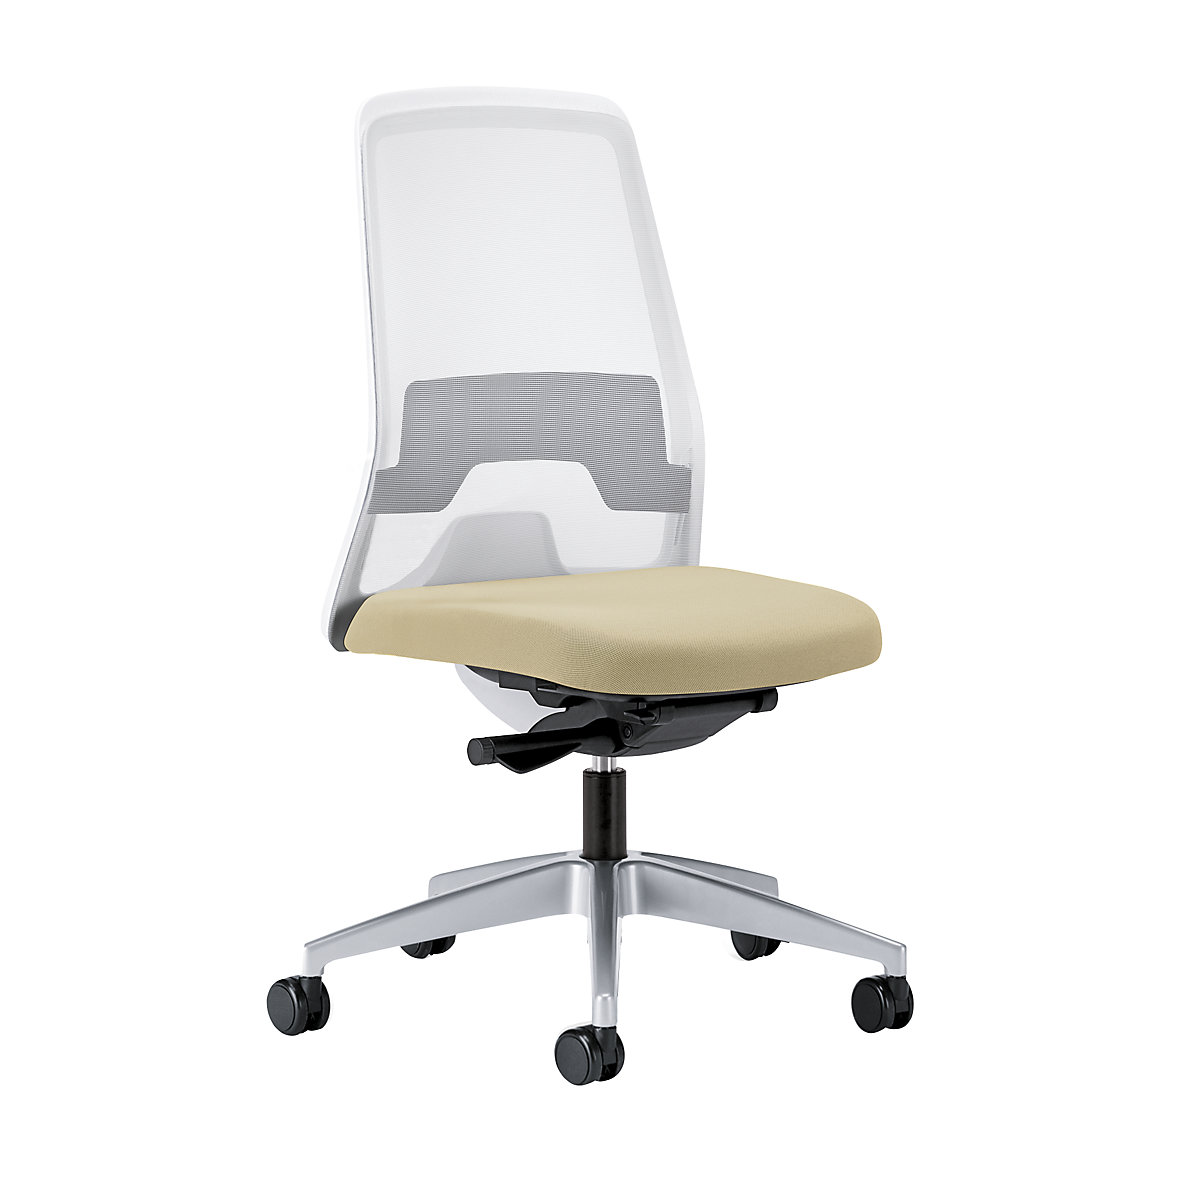 Krzesło obrotowe dla operatora EVERY, oparcie siatkowe, białe – interstuhl, szkielet brylantowo-srebrny, z twardymi rolkami, beżowy, głęb. siedziska 430 mm-6